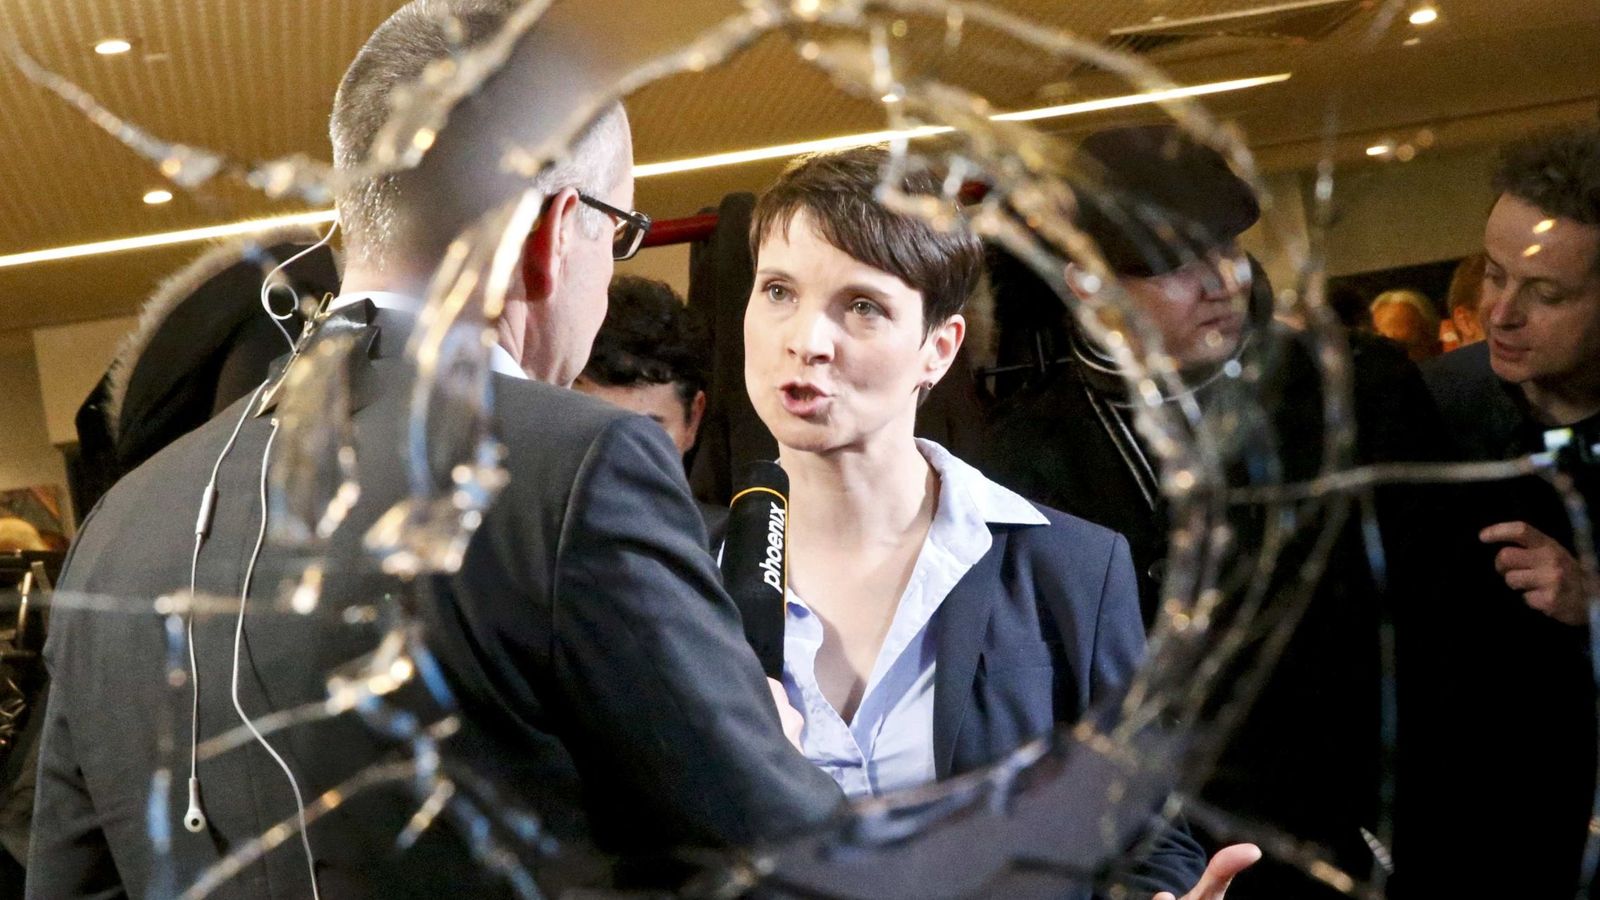 Foto: Frauke Petry, líder de Alternativa para Alemania, entrevistada tras conocerse los resultados electorales, en Berlín, el 13 de marzo de 2016 (Reuters).